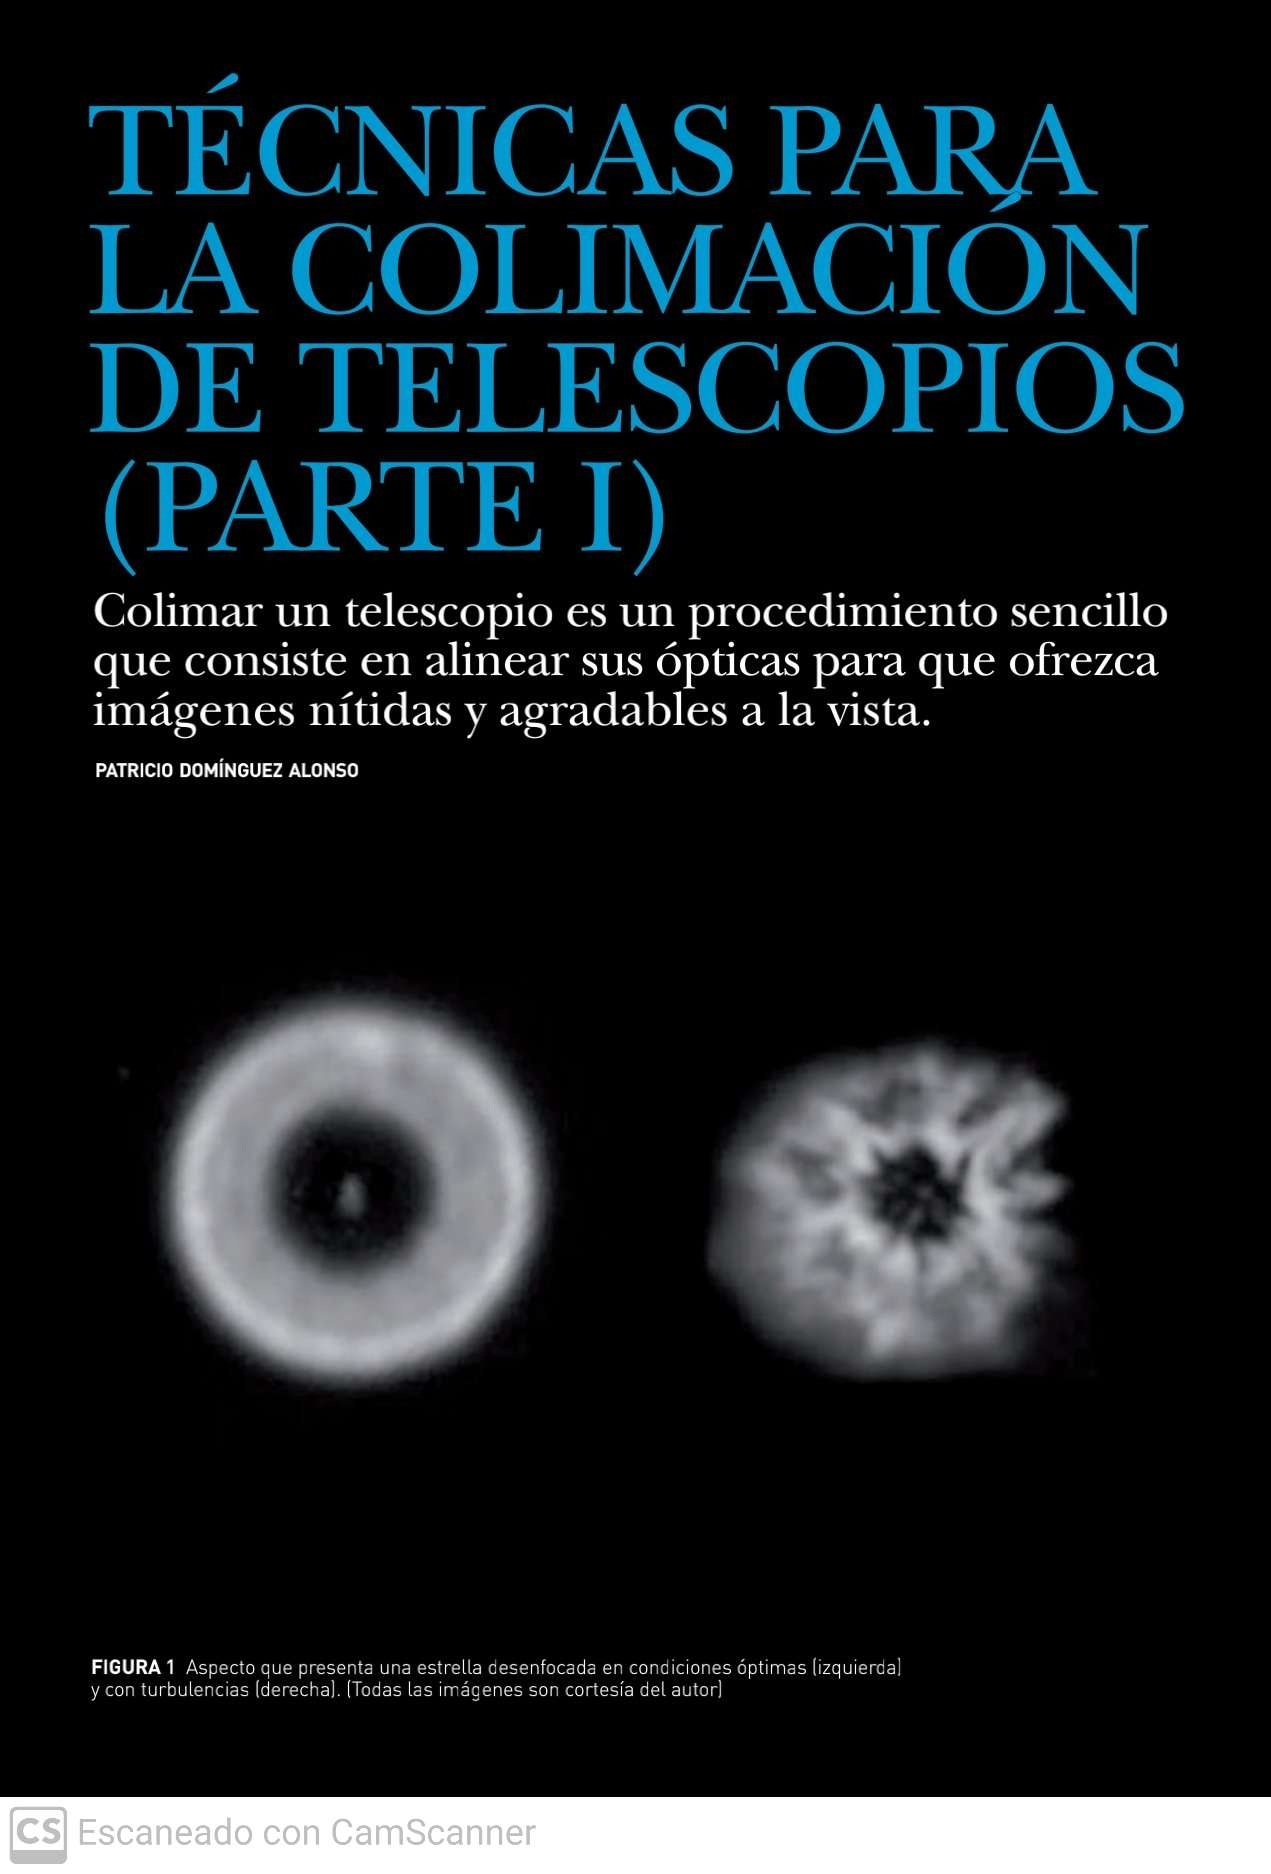 Colimacion-telescopios_1.jpg.25ddf9721f9a5dbf3606c3a2fcffba23.jpg